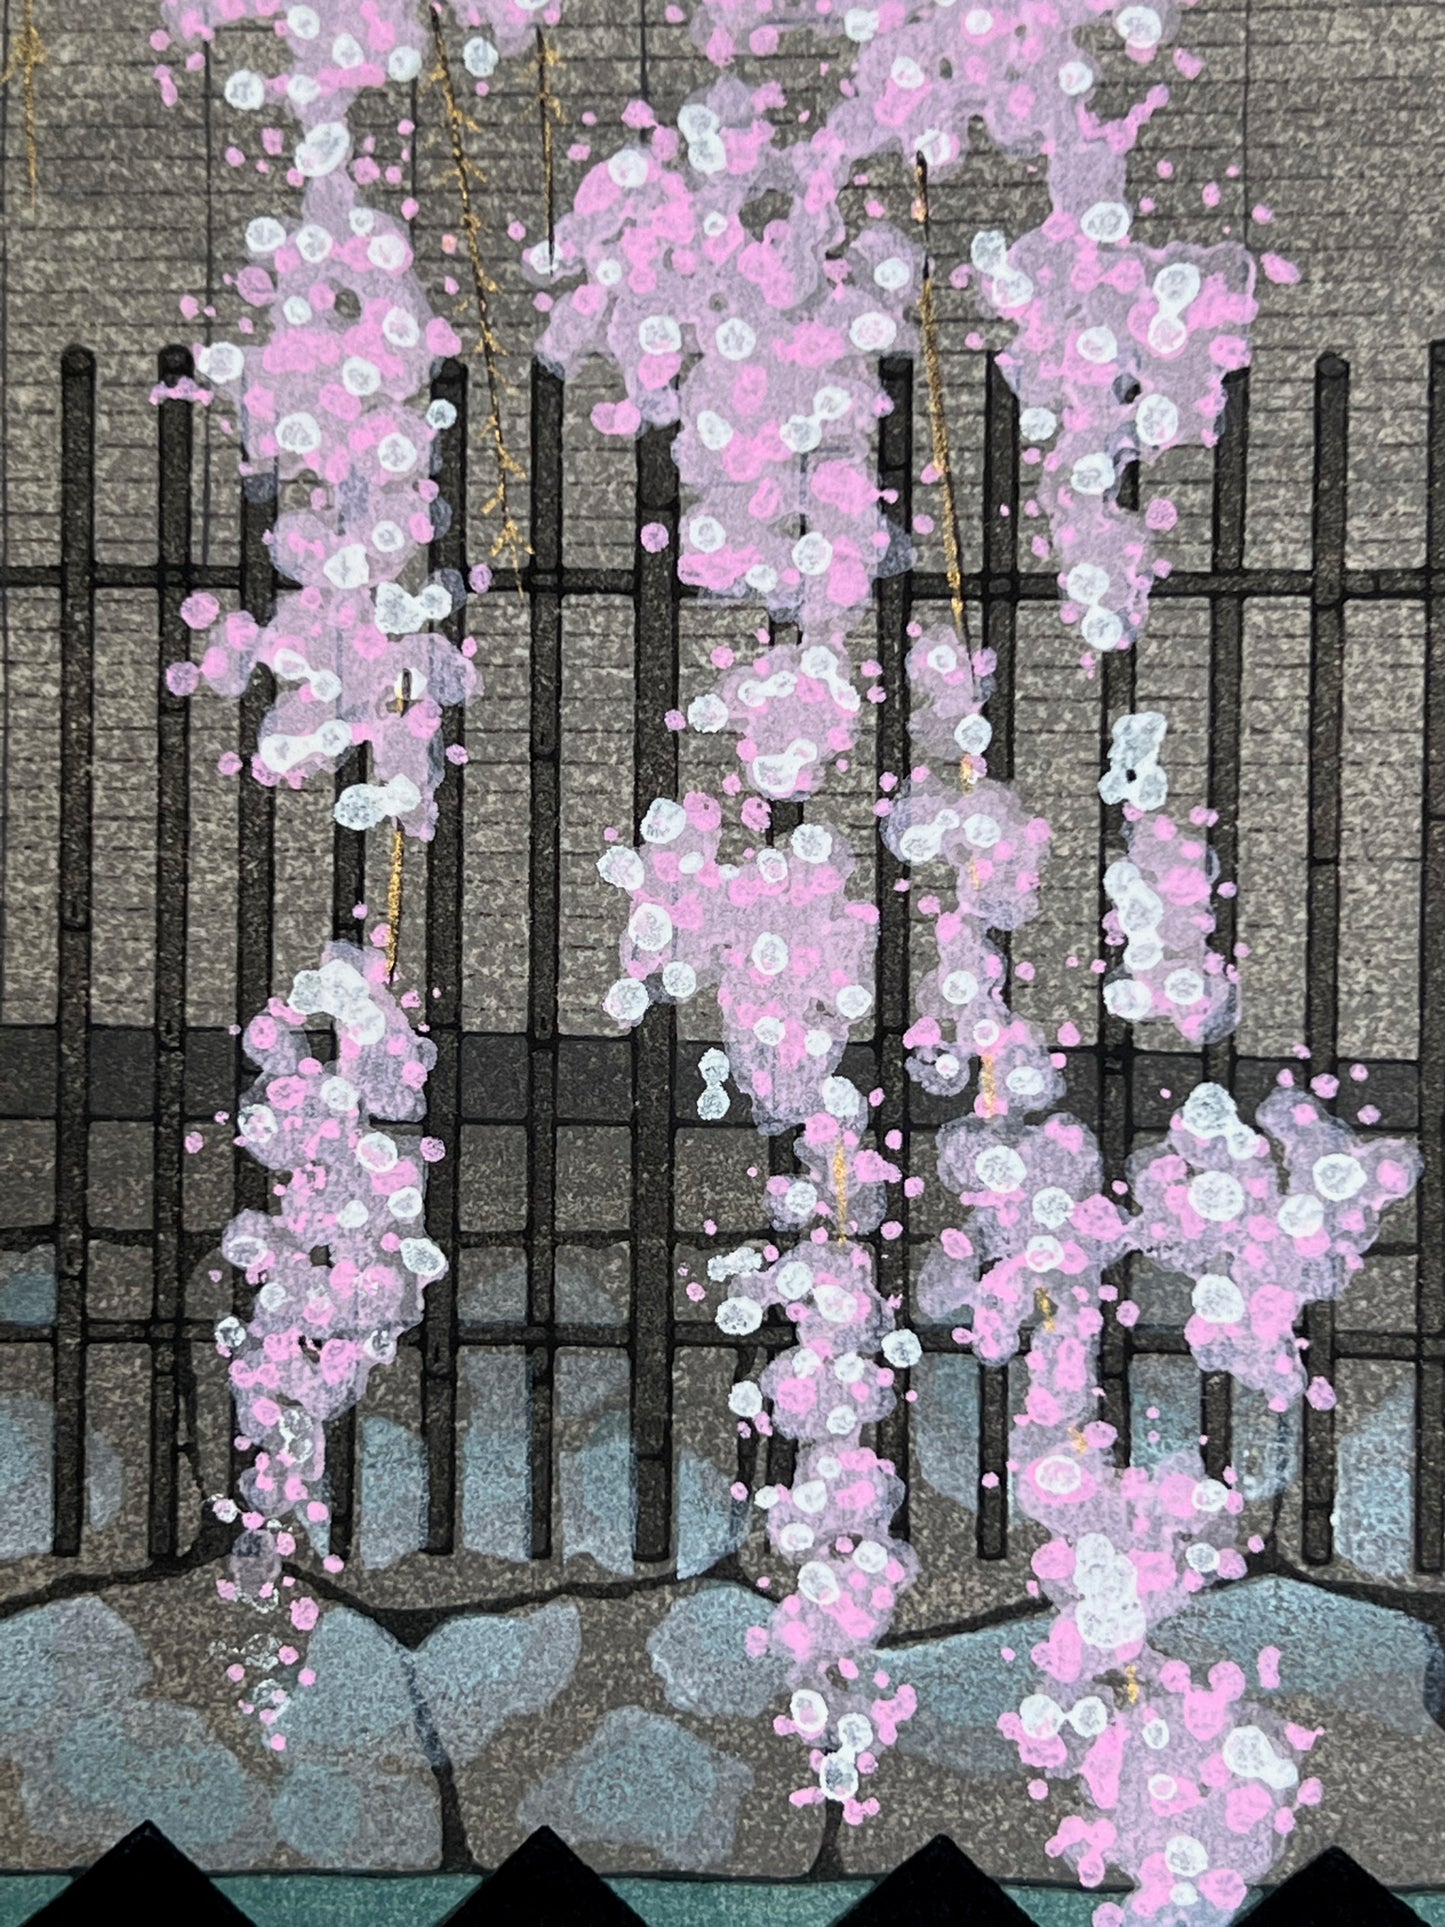 estampe japonaise cerisier en fleur descendant sur une barrière rouge et noire, gros plan sur les fleurs de cerisier